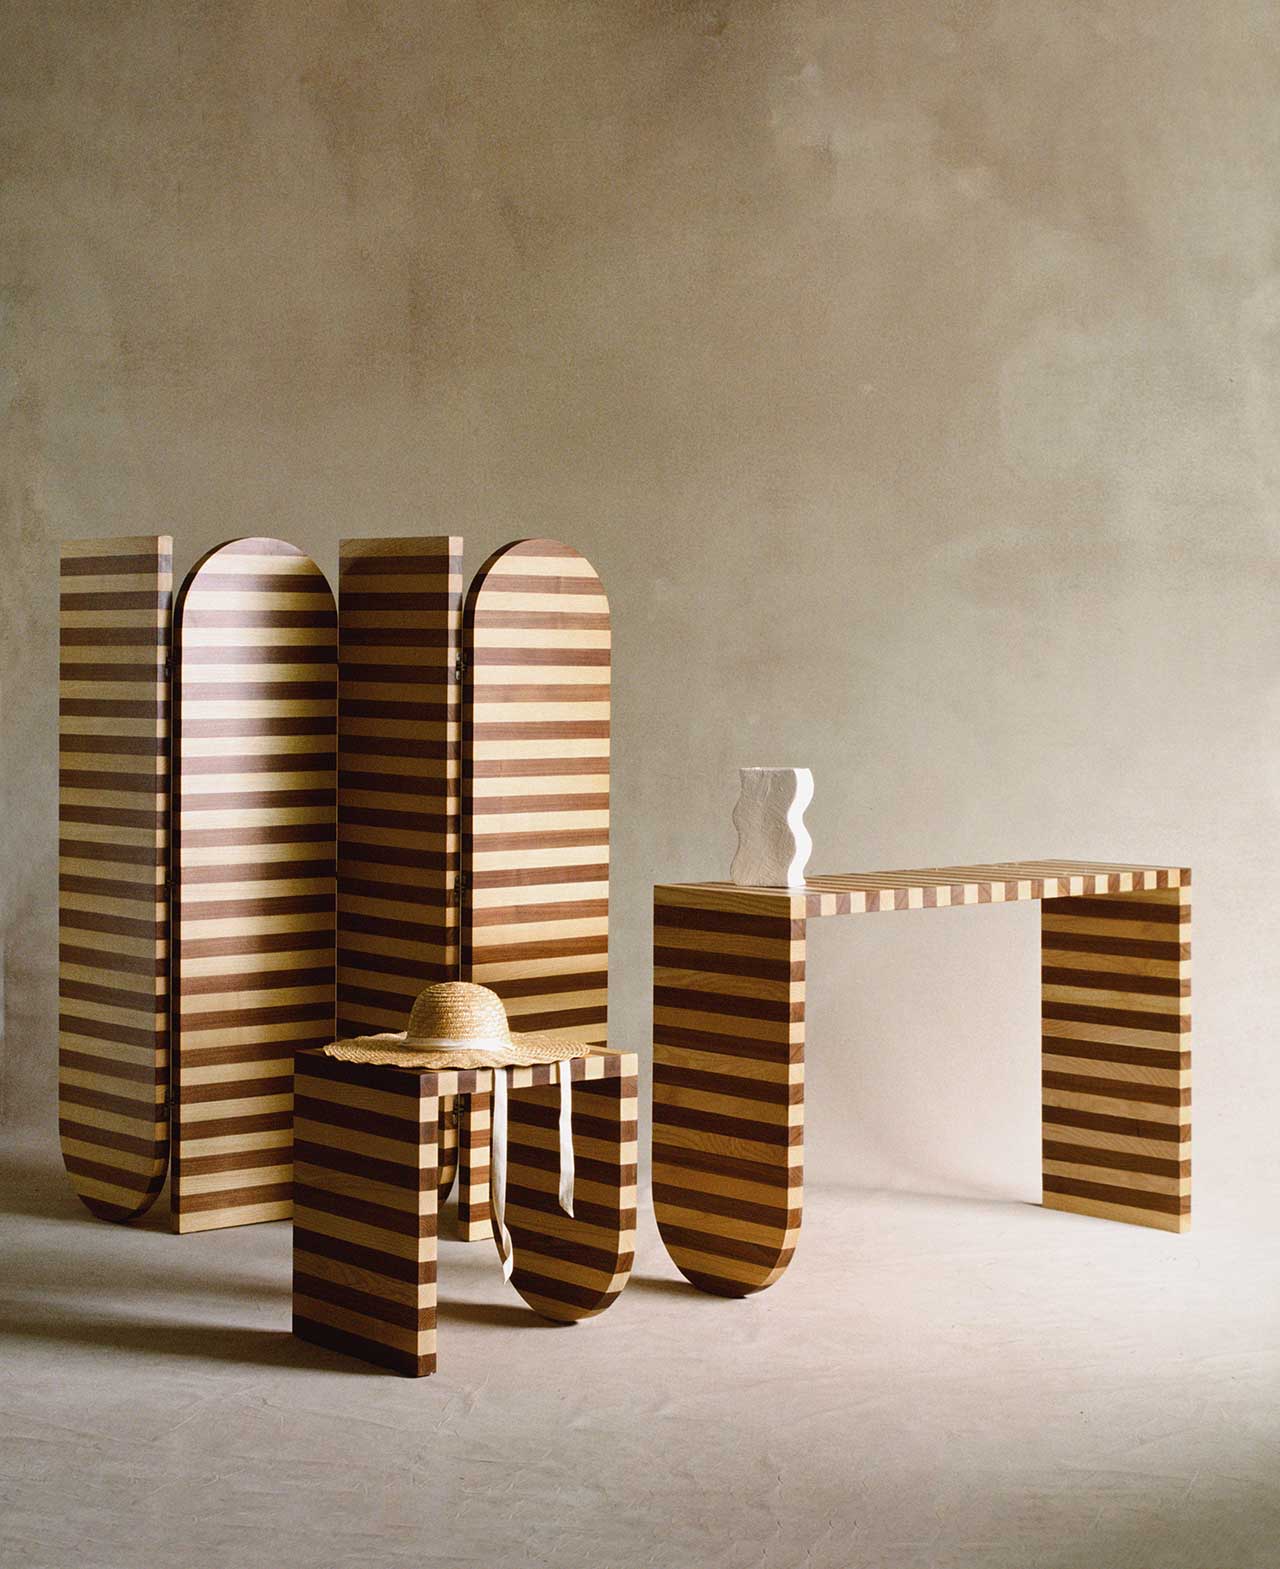 sarah ellison推出一系列条纹木家具,很有设计感